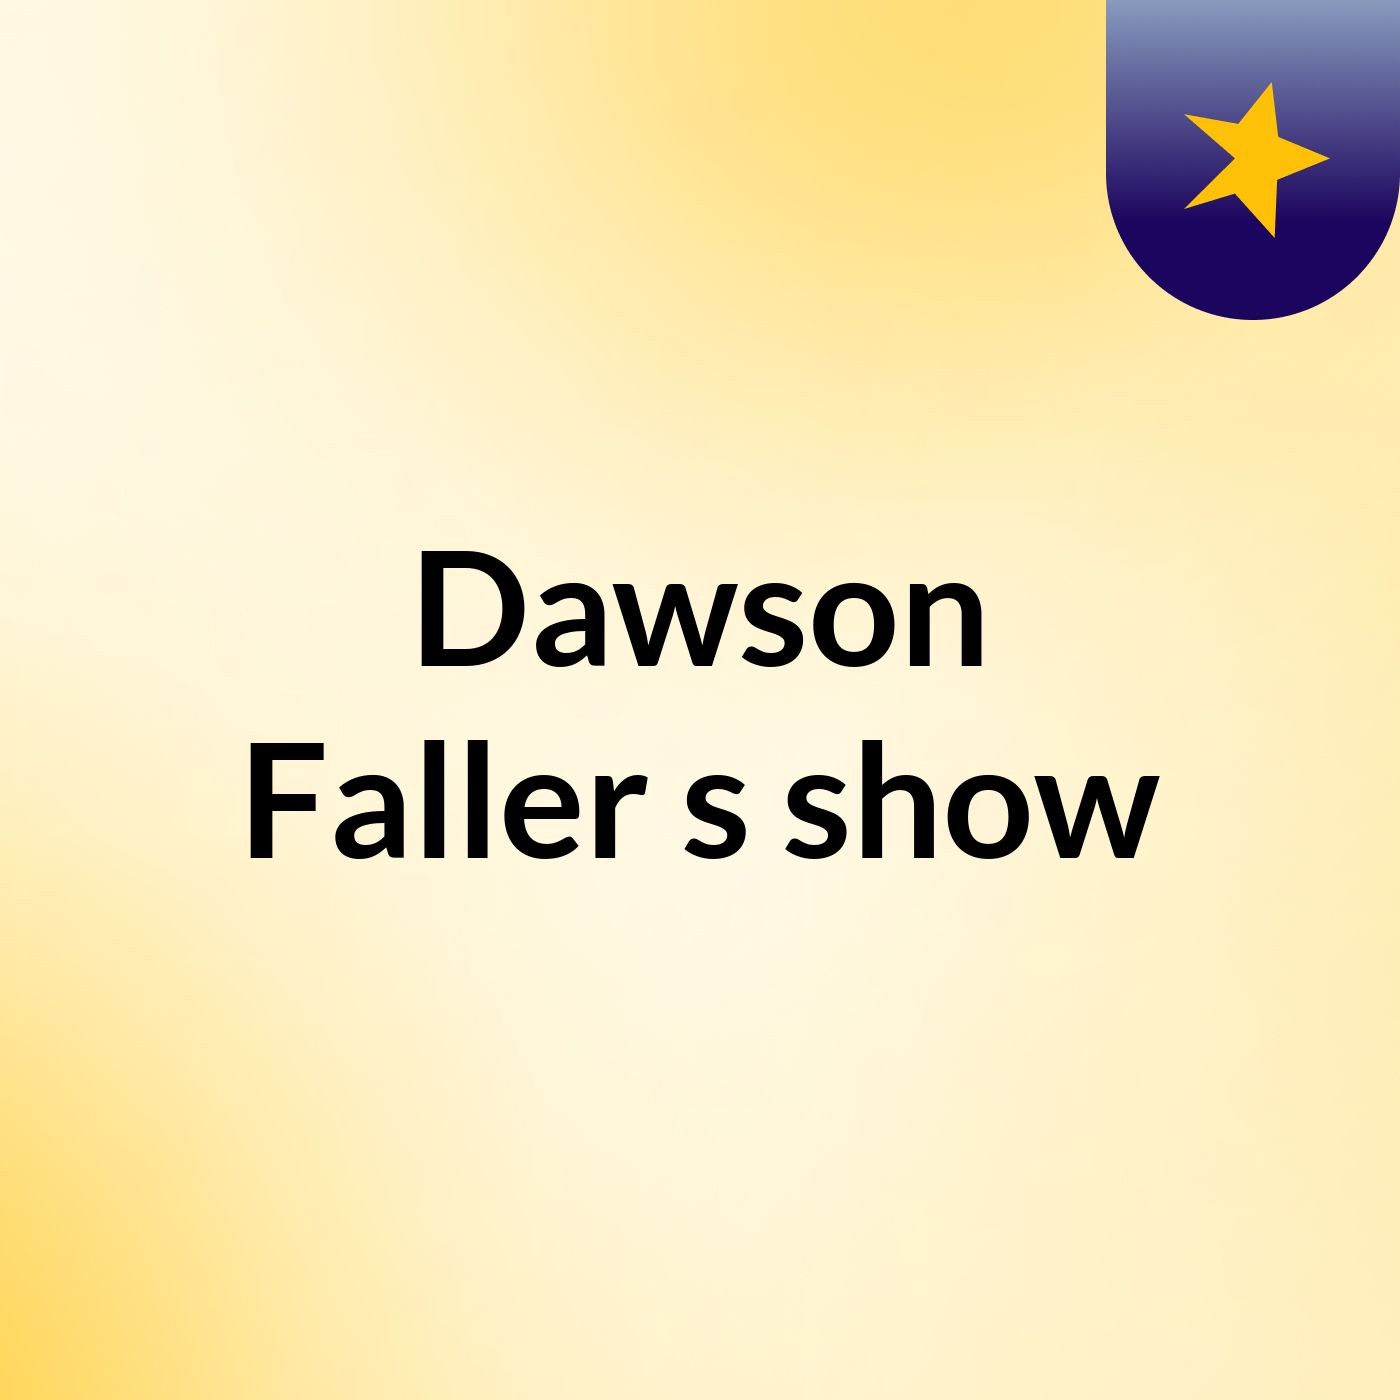 Dawson Faller's show